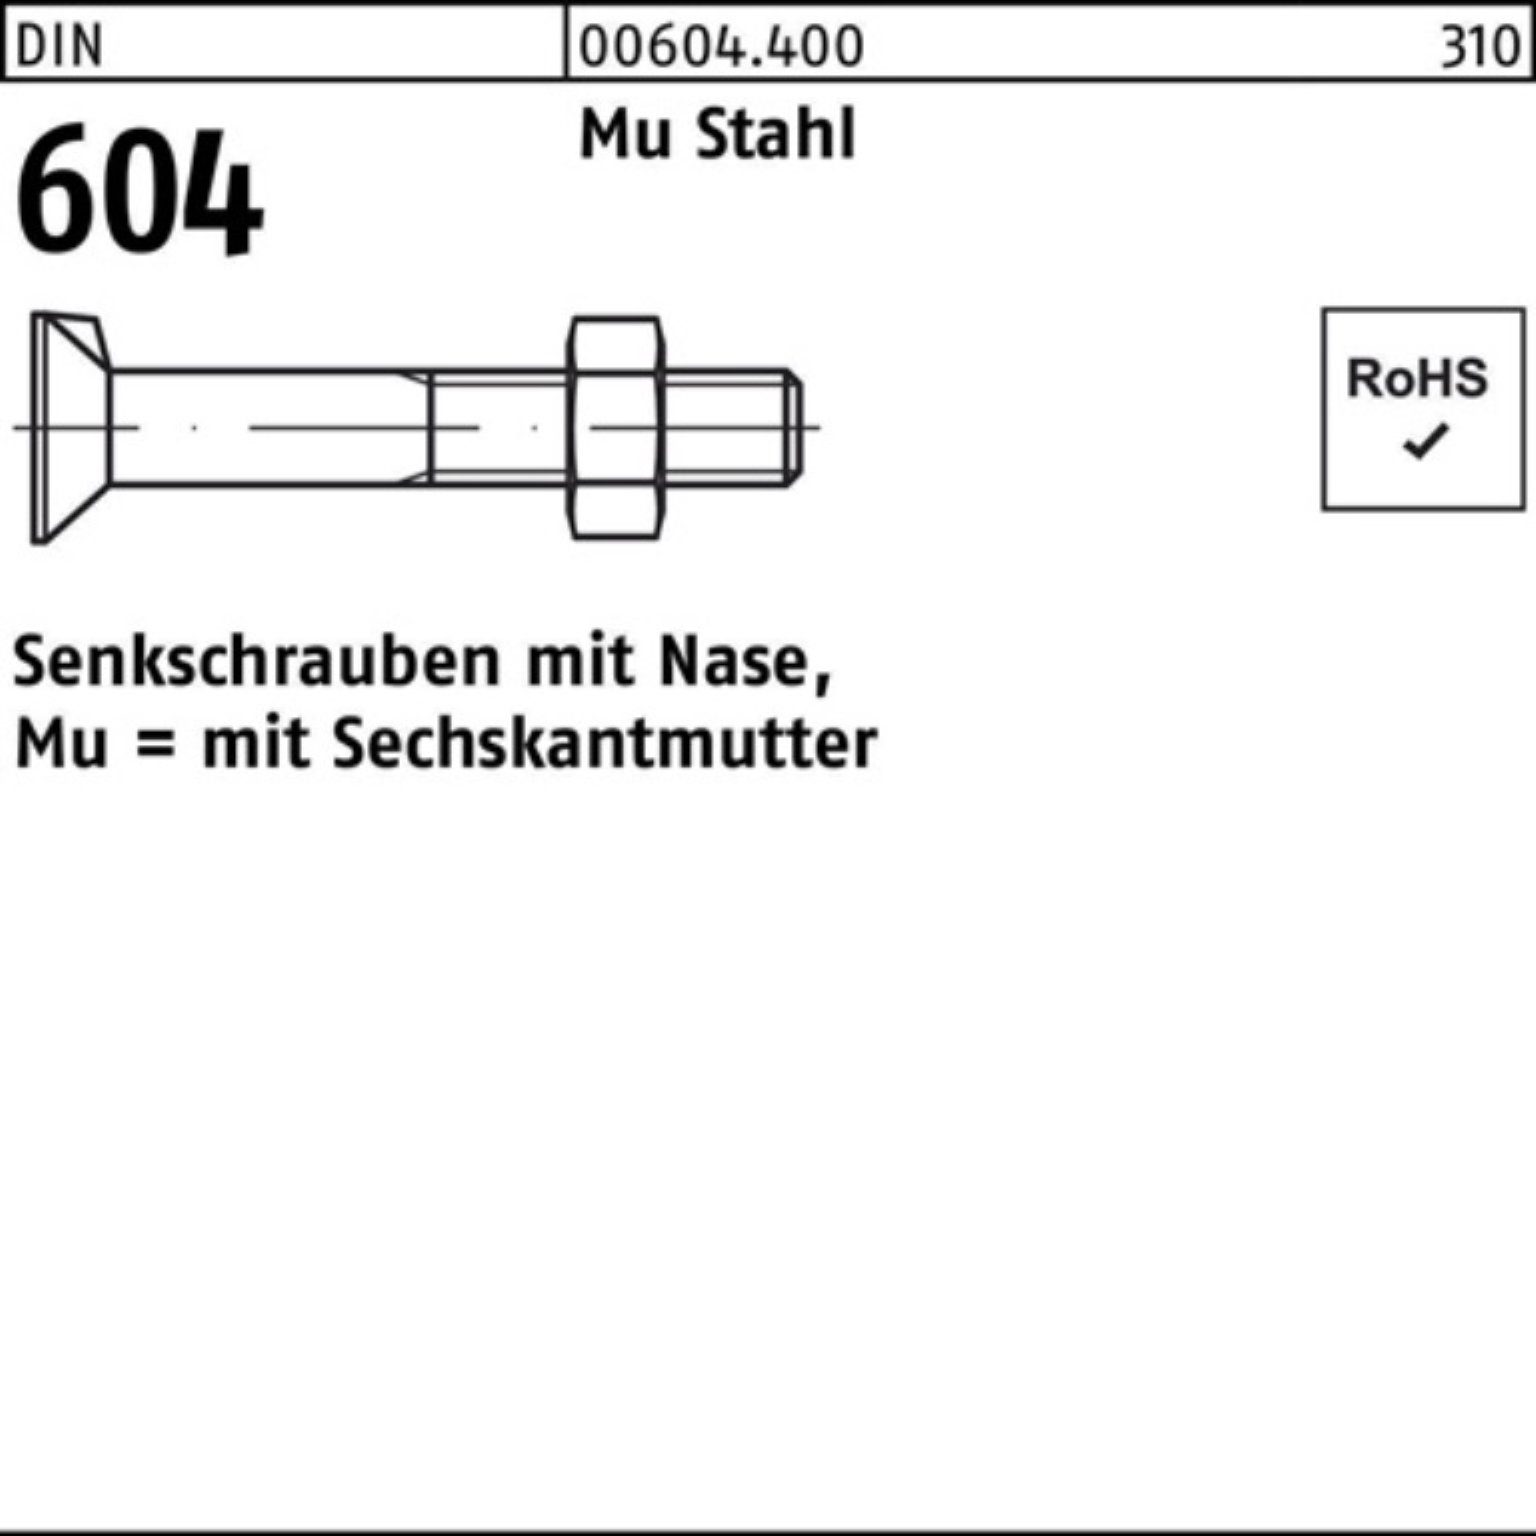 Reyher Senkschraube 100er Pack Senkschraube DIN 604 Nase/6-ktmutter M20x 110 Mu Stahl 4.6